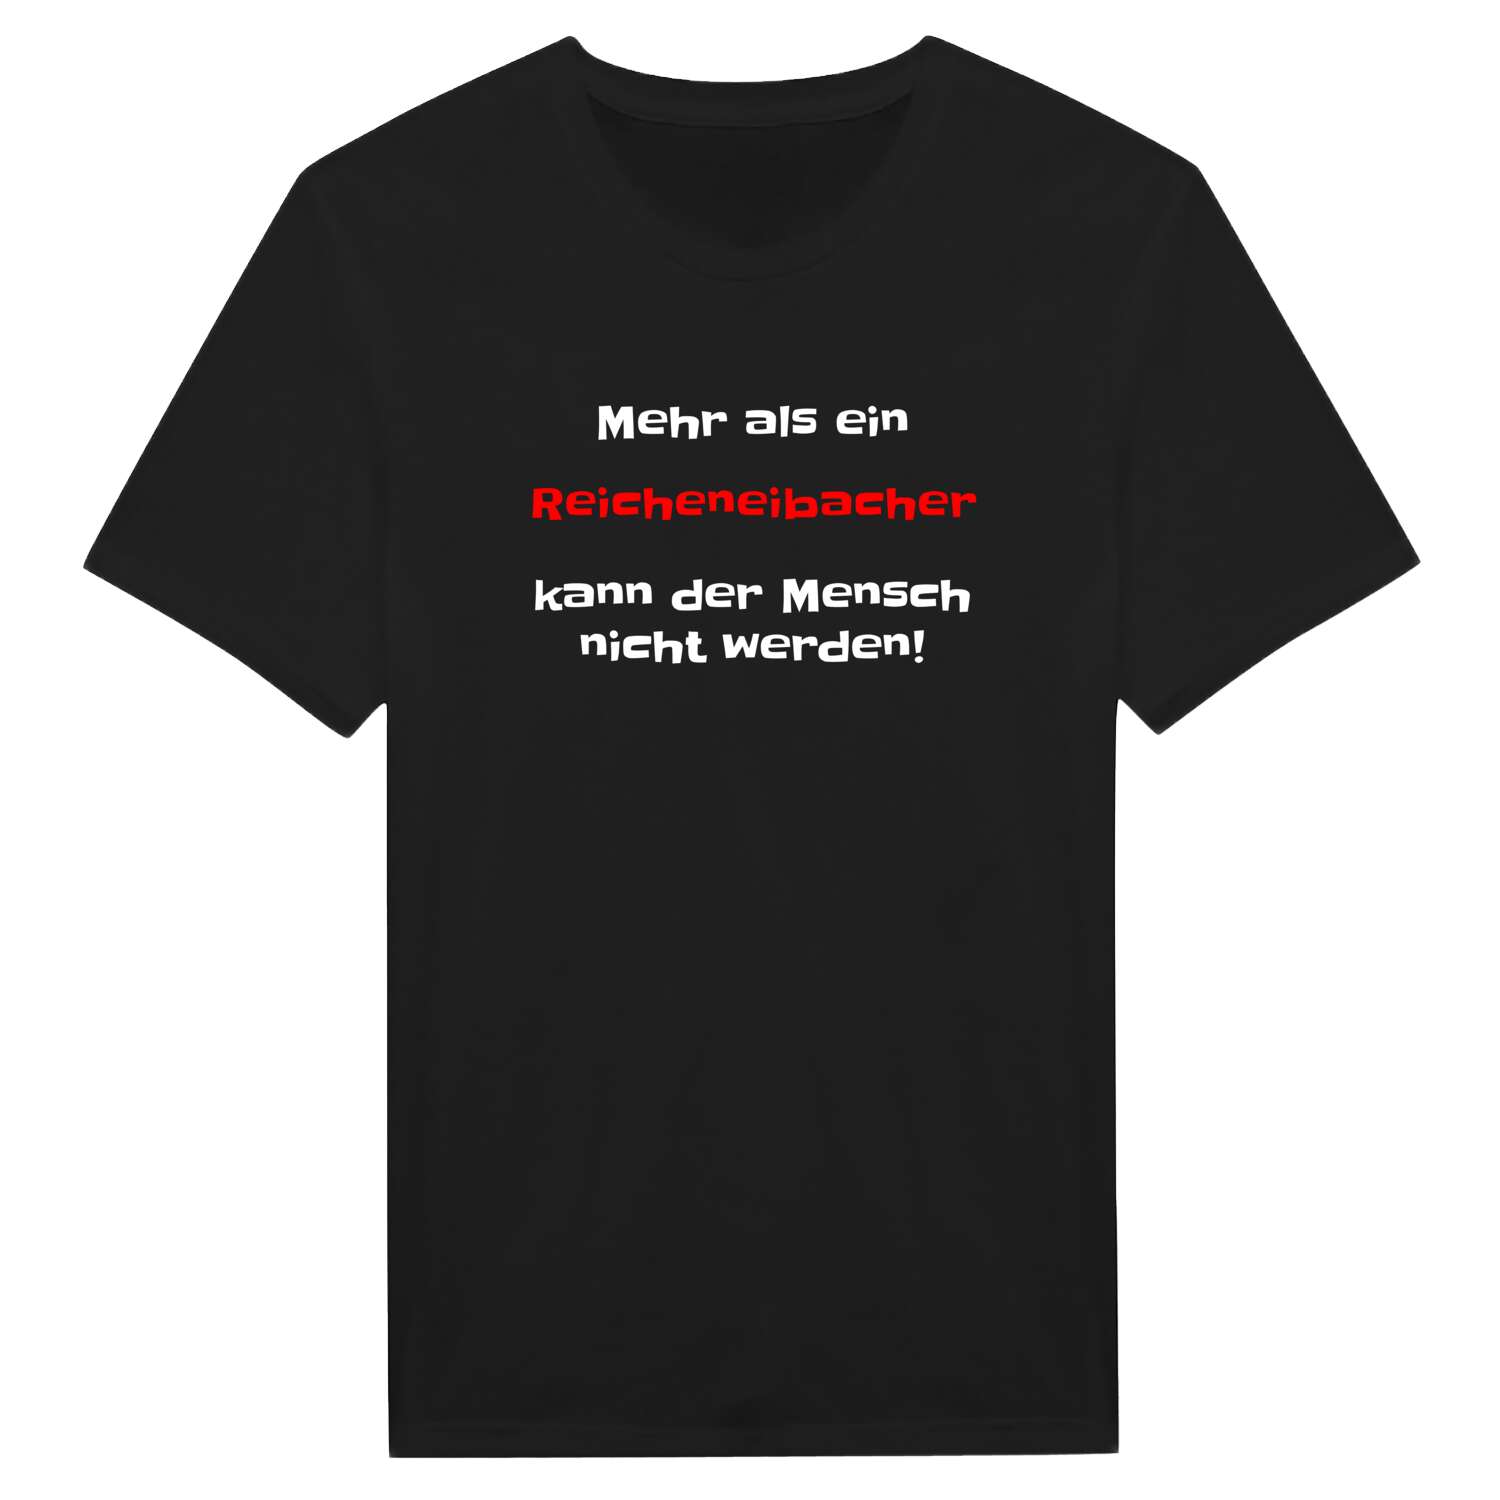 Reicheneibach T-Shirt »Mehr als ein«